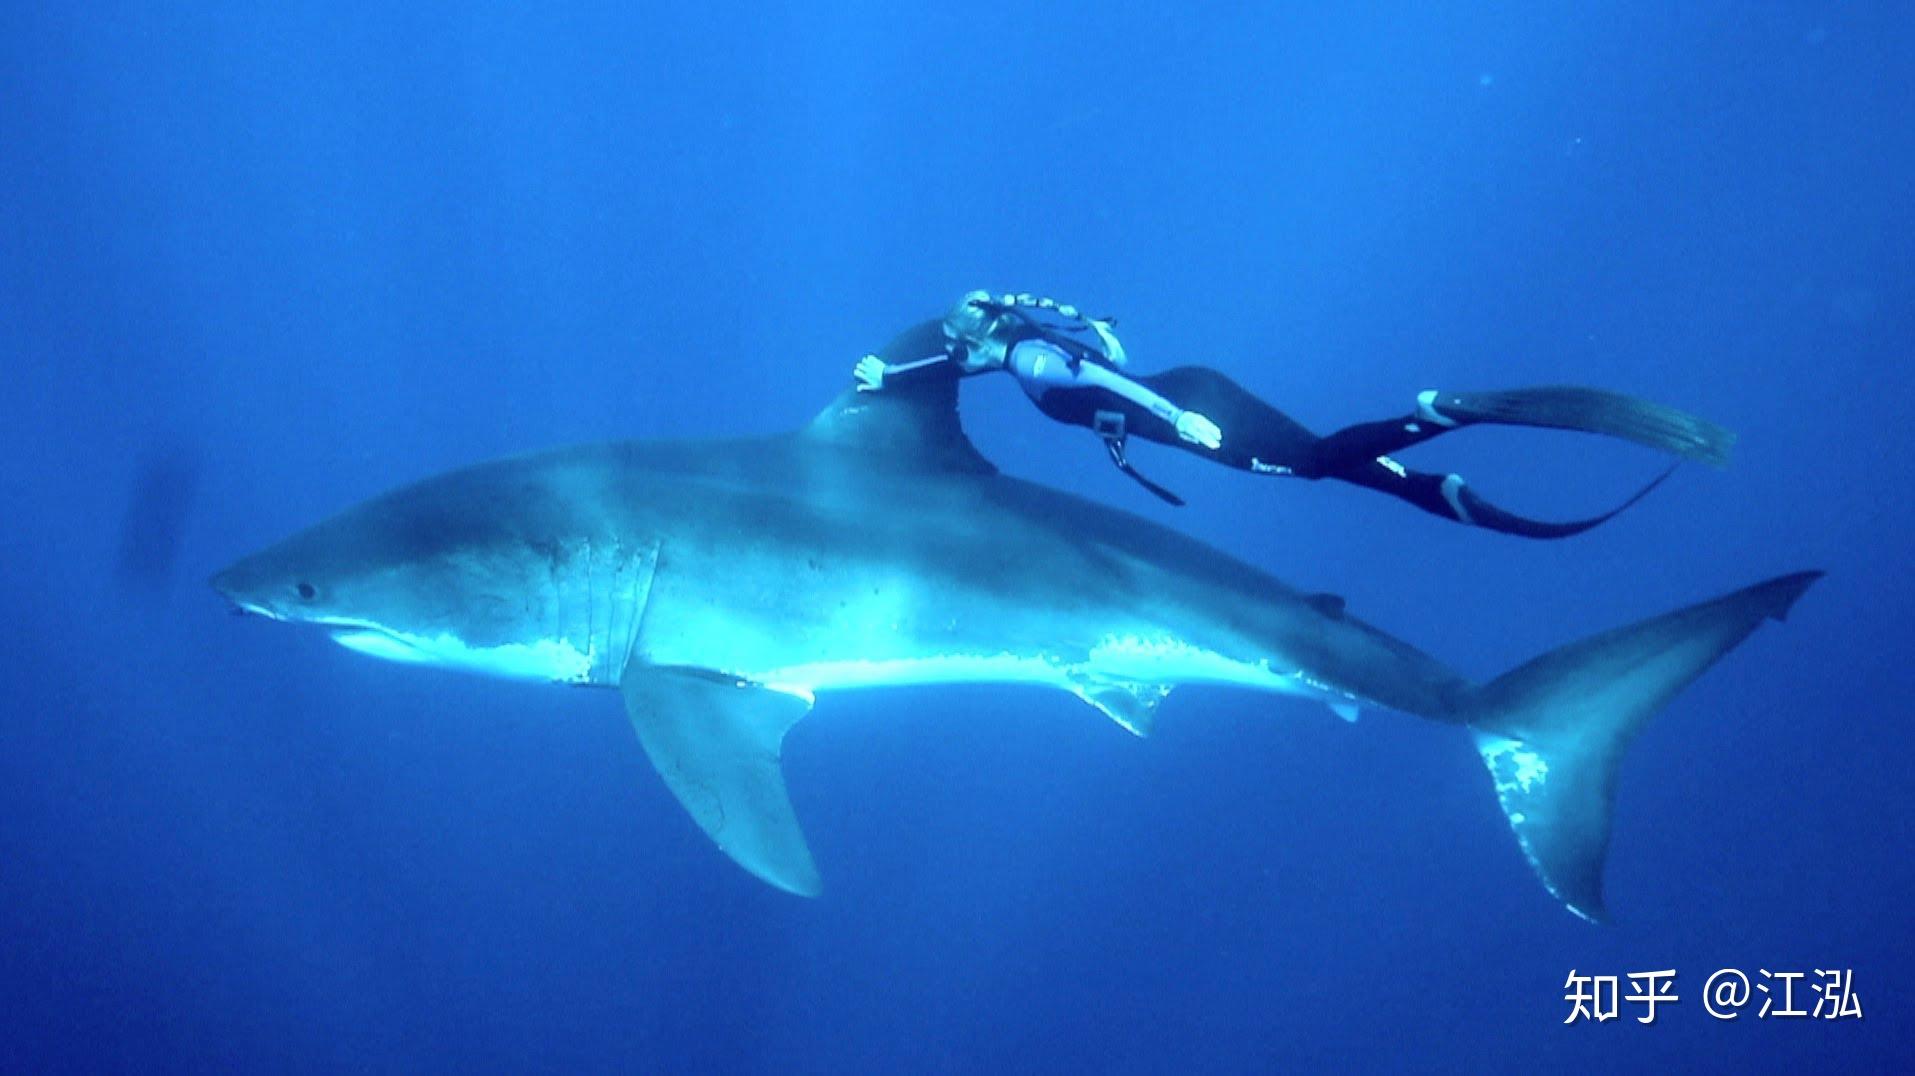 大白鲨—— 鲨鱼统治者 - 鲨鱼百科